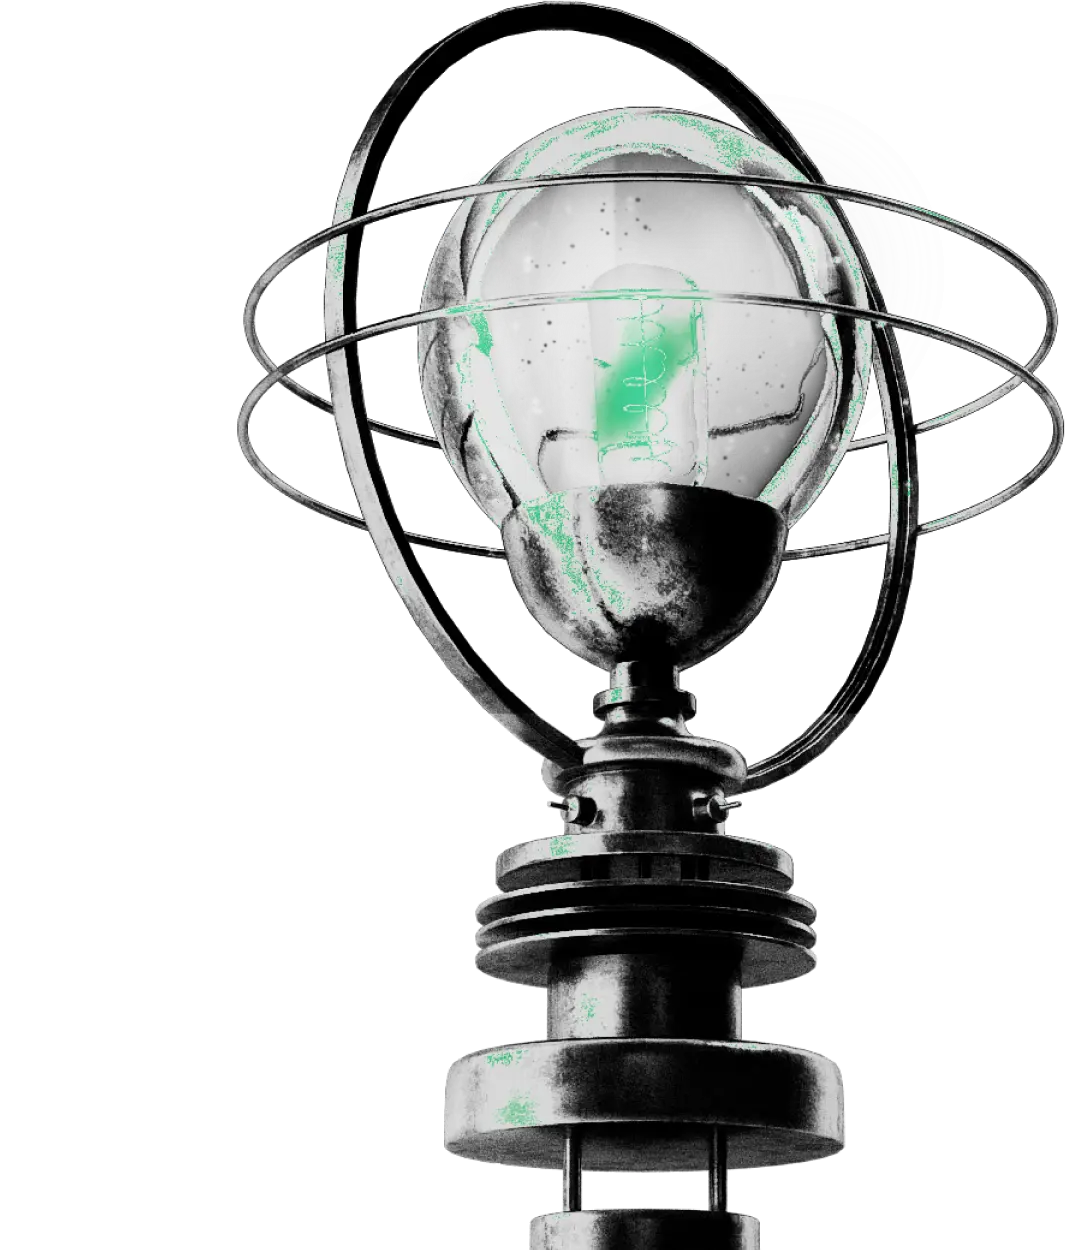 Srebrna lampa z zielonymi elementami w stylu Kryptonum jako symbol kreatywnych pomysłów, które ma agencja kreatywna Kryptonum